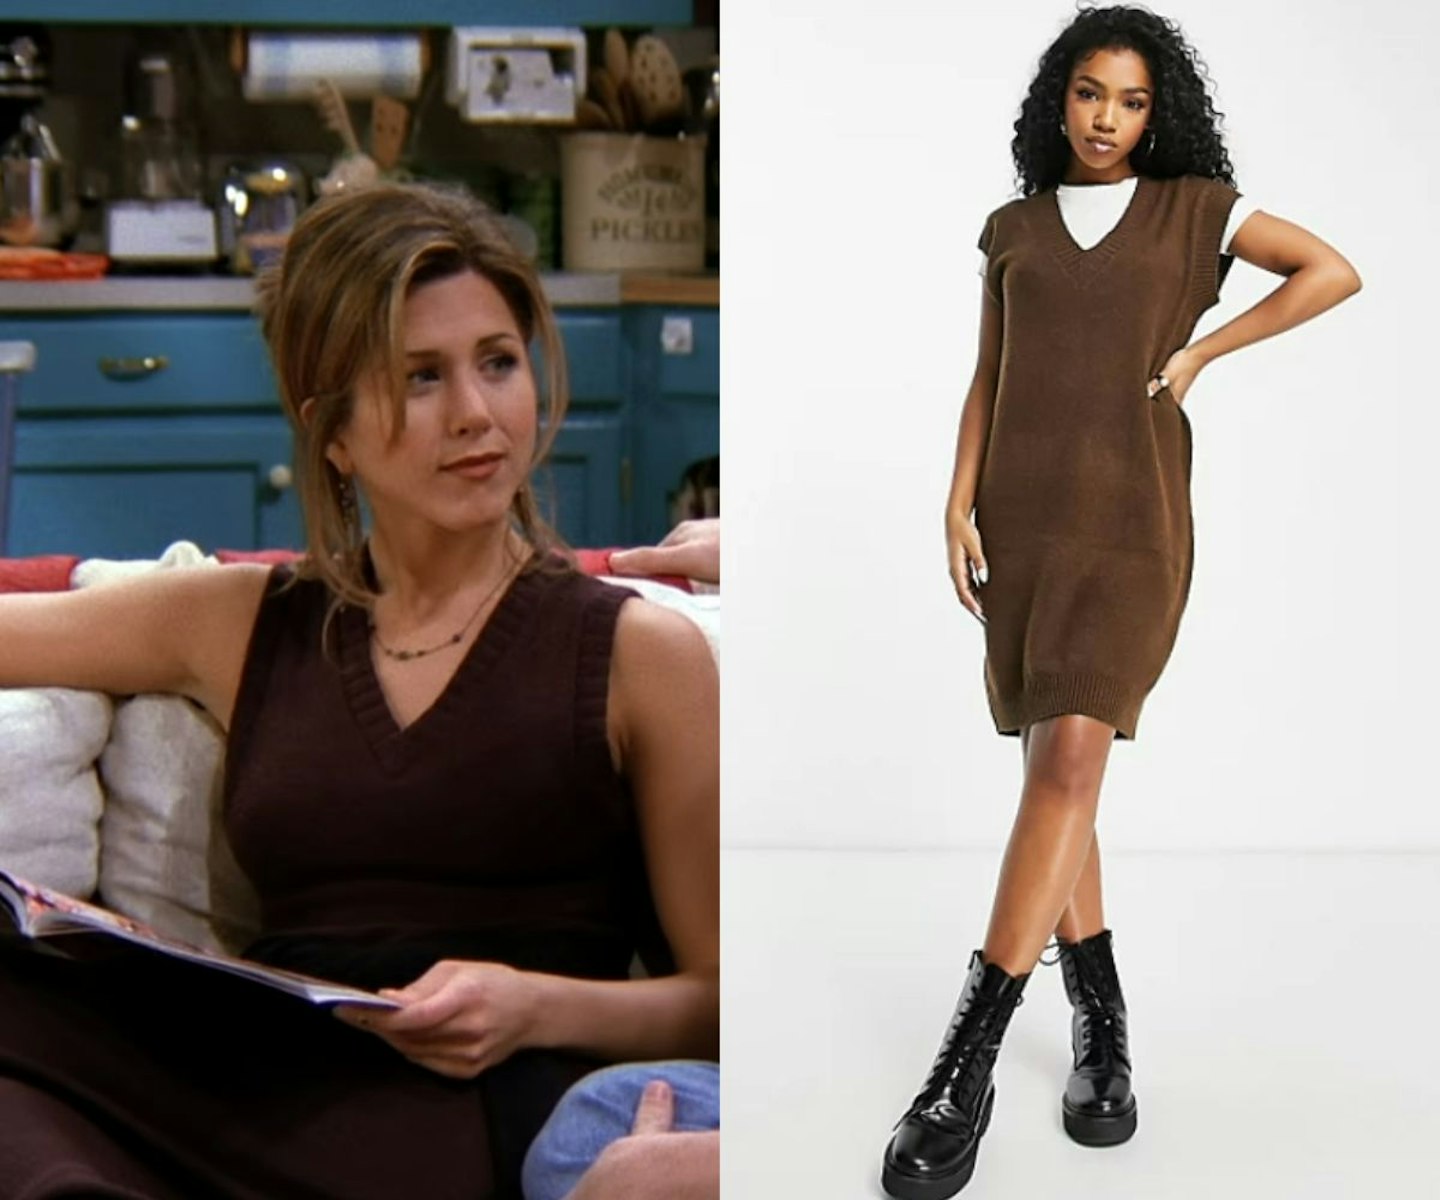 Rachel Green Friends Fashion - Rachel Green's Best Outfits on Friends